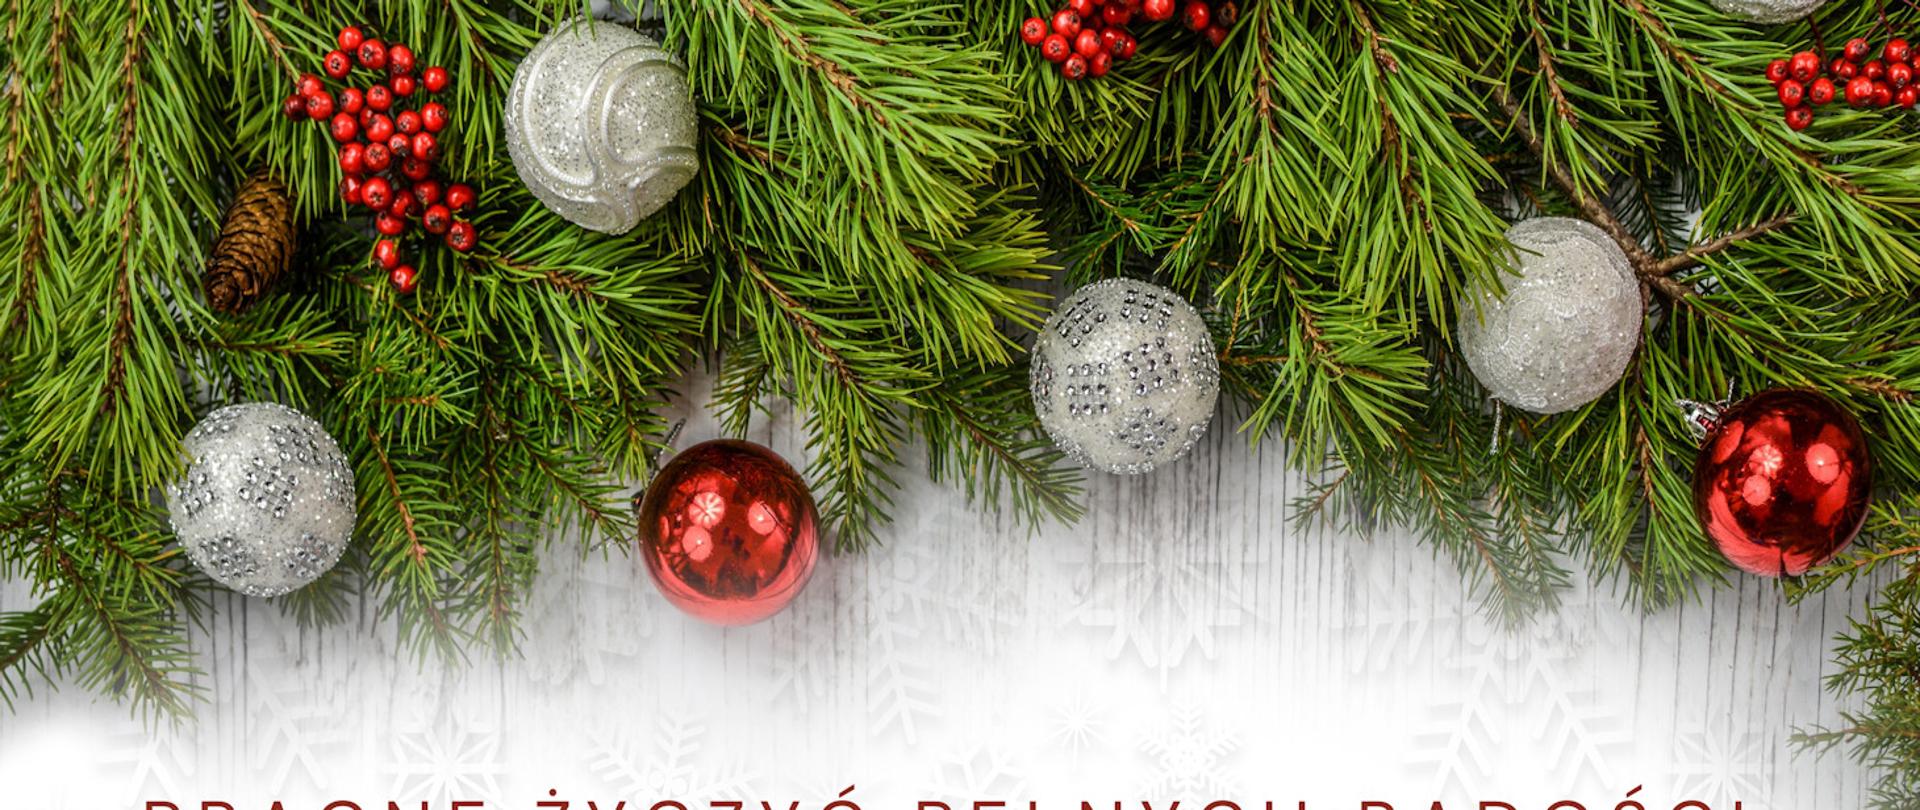 Zdjęcie przedstawia gałązki choinki z bombkami. Pod igliwiem znajdują się życzenia świąteczne od Pani Dyrektor. W lewym dolnym rogu ikony trzech choinek.